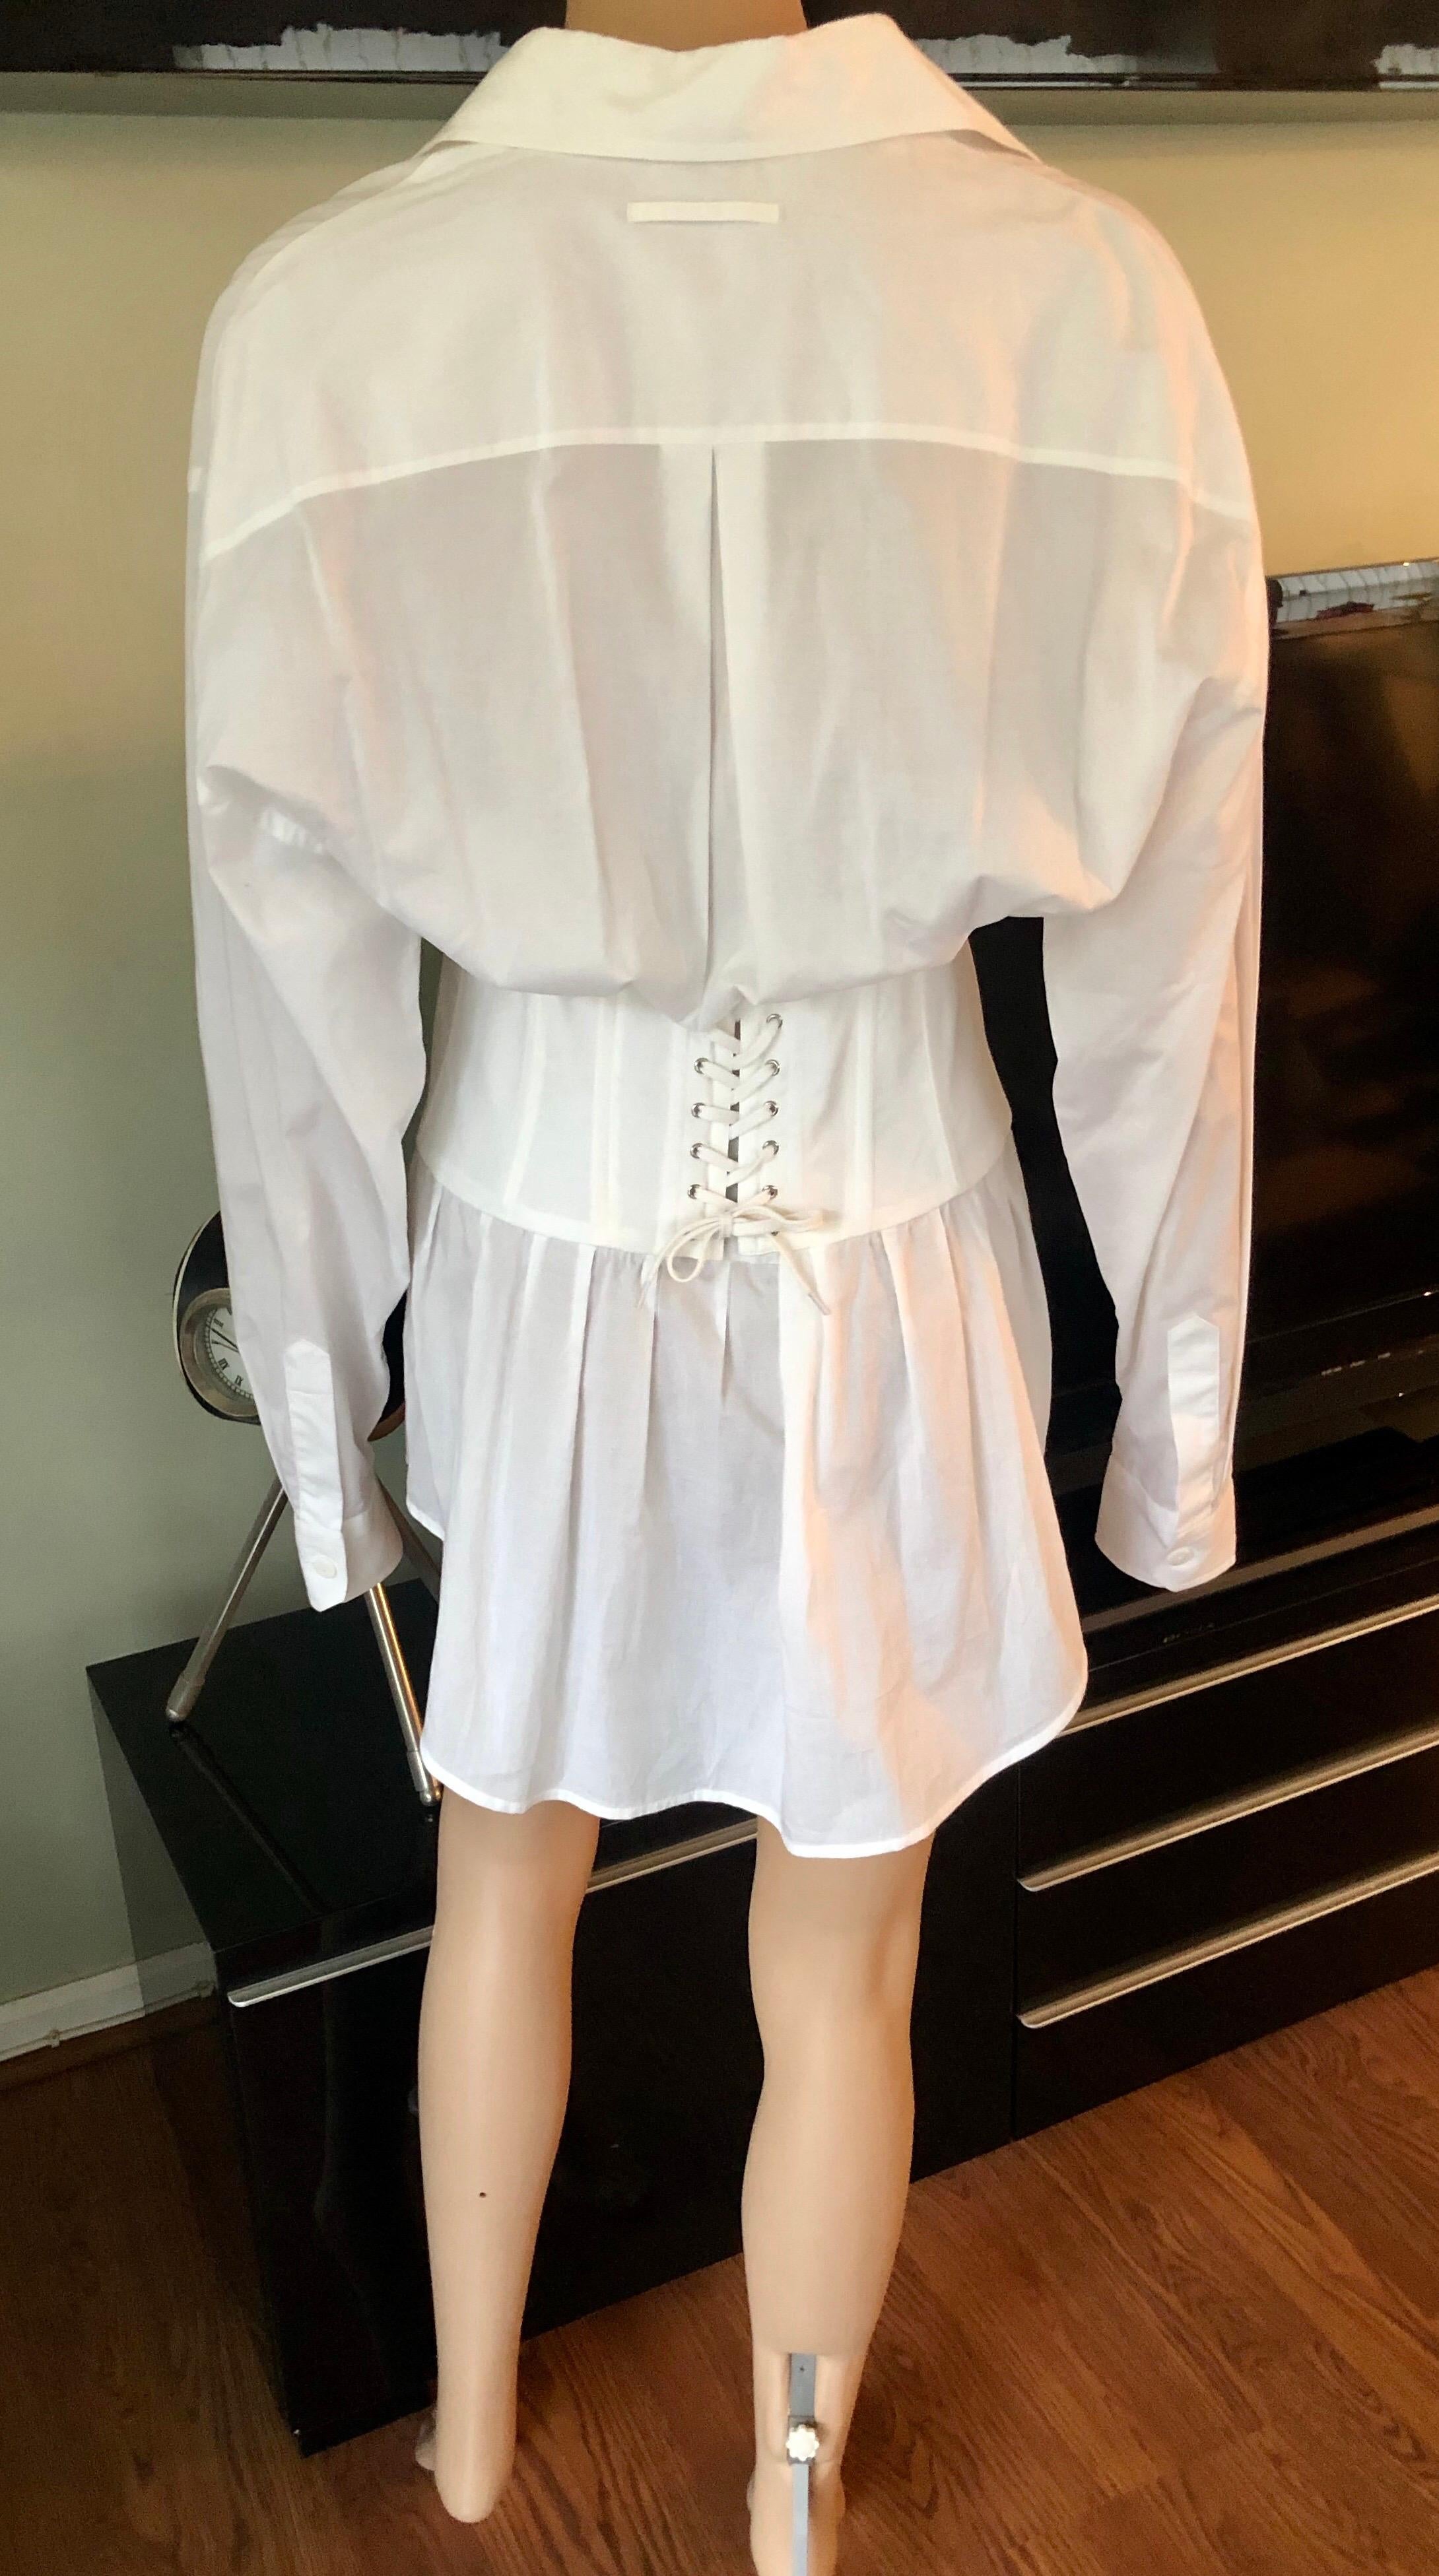 Jean Paul Gaultier Vintage Corset White Shirt Dress IT 44

La robe chemise Jean Paul Gaultier Vintage en coton blanc à détails corsetés présente un col ouvert, une fermeture à boutons sur le devant, des manches longues et une longueur mini.

